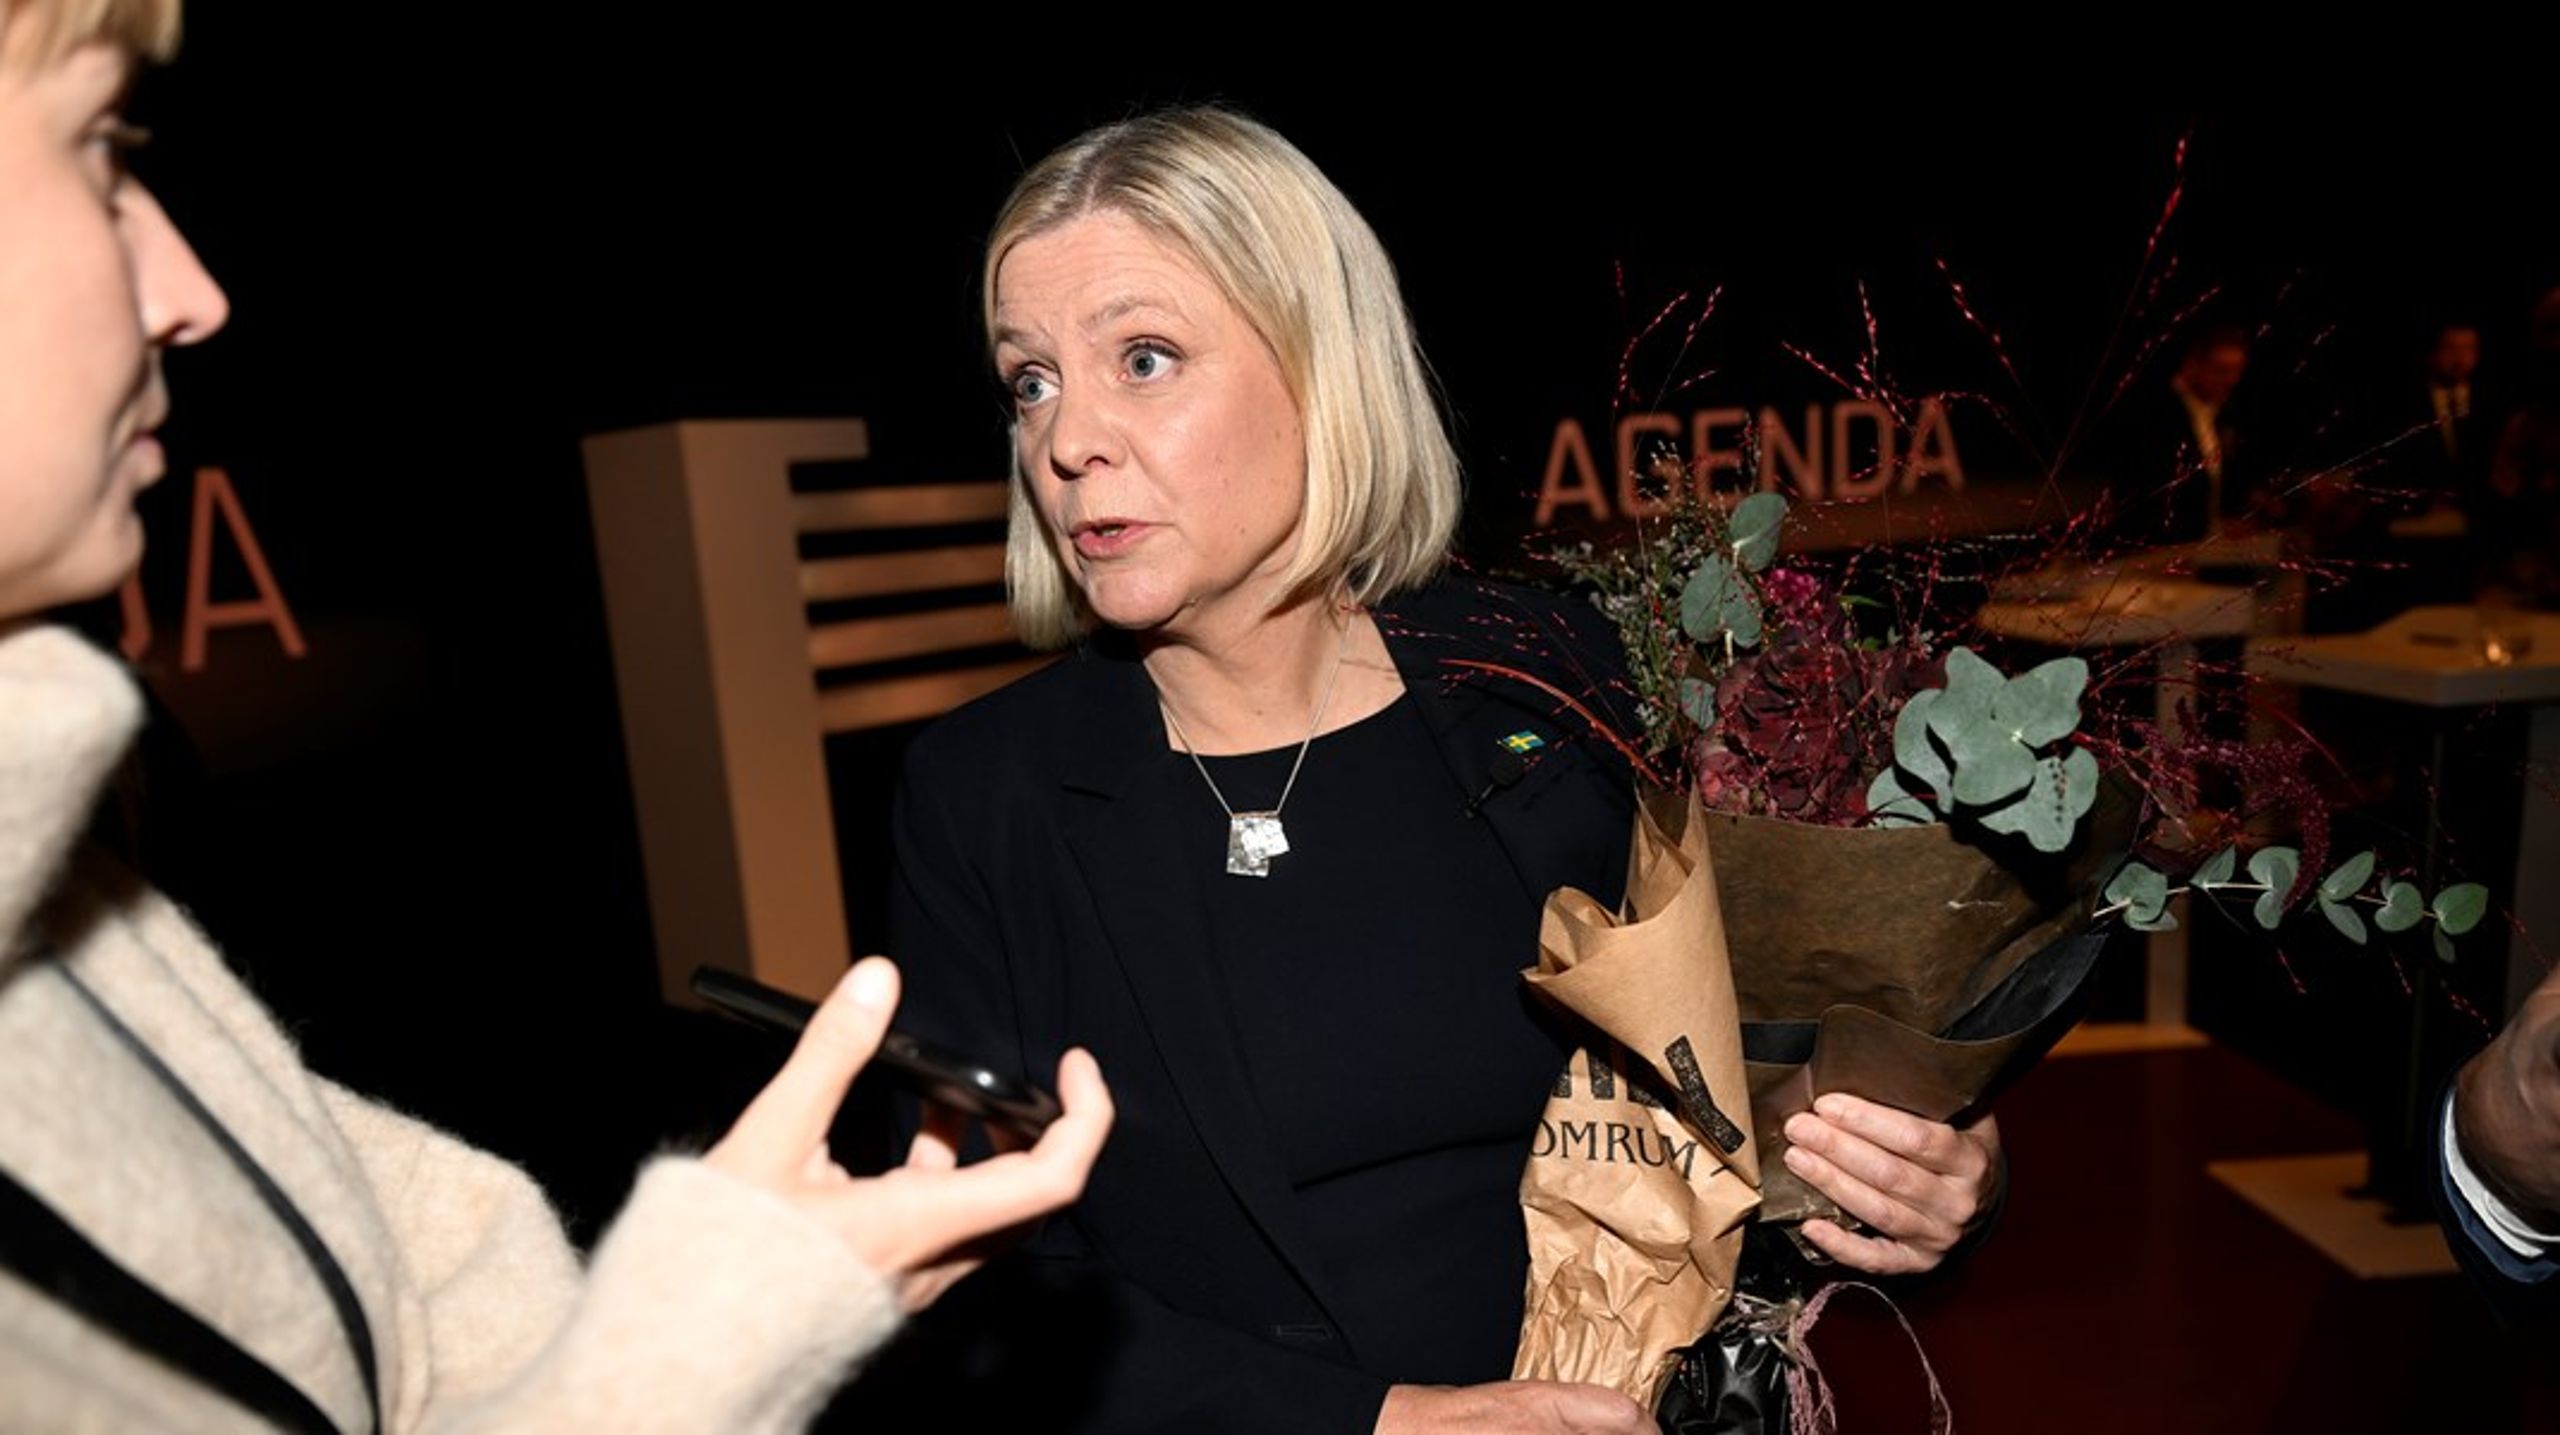 &nbsp;I riksdagen är oppositionen knäpptysta. Socialdemokraternas partiledare Magdalena Andersson sprider obekräftade uppgifter från Hamas och är tyst när systerpartiet Fatah sprider antisemitisk sörja om förintelsen, skriver debattören.